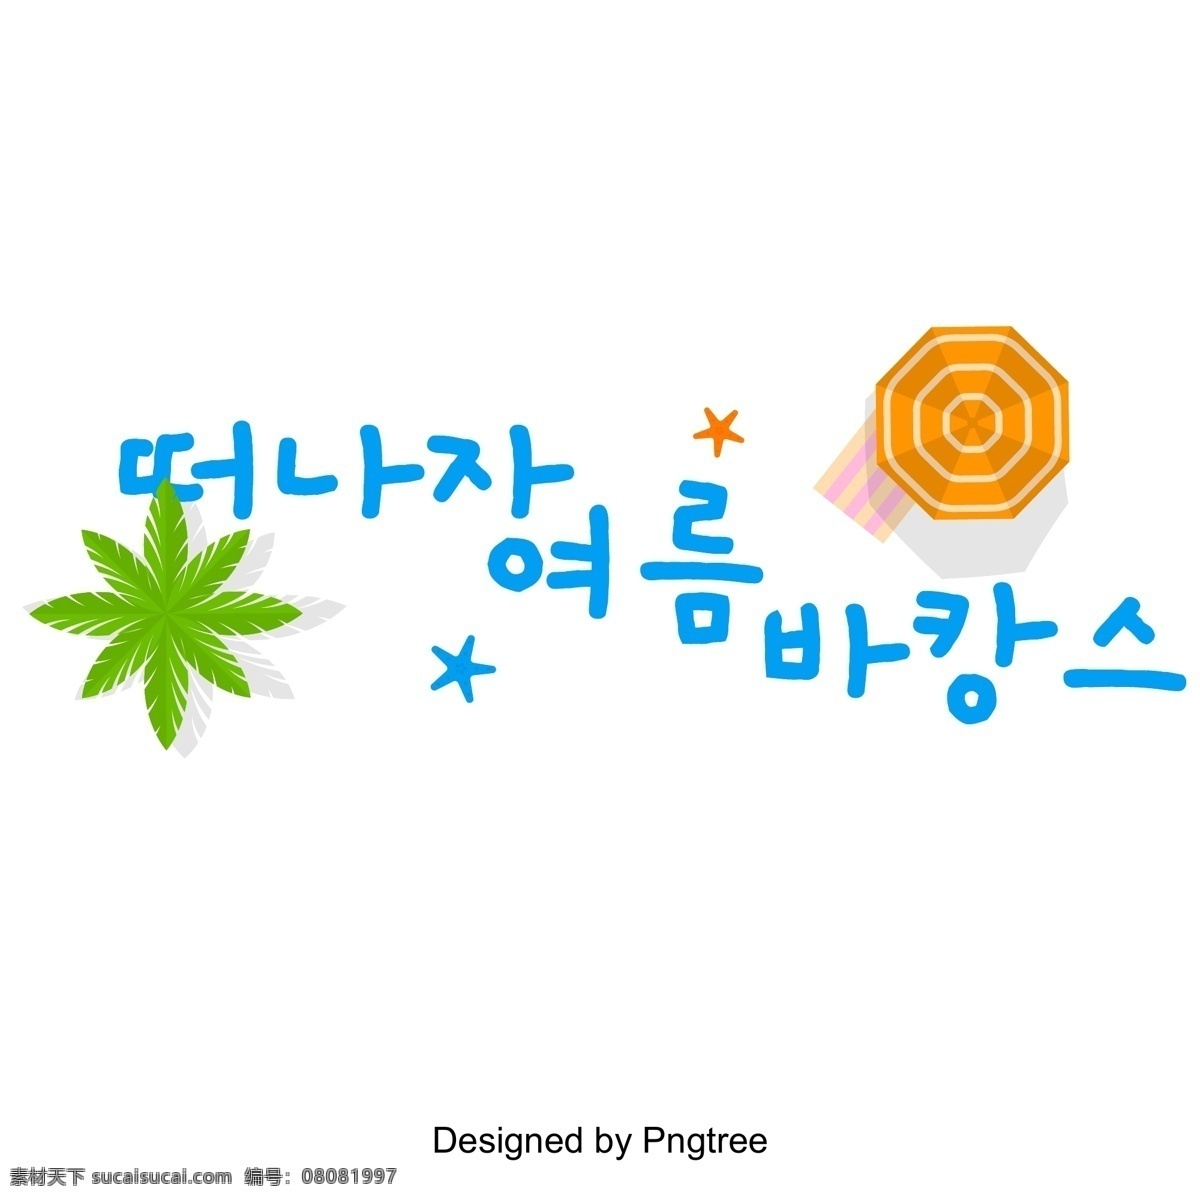 开始 暑假 蓝色 卡通 字体 夏季 假期 白色和蓝色 动画片 雨伞 韩文 季节变换 标题 字形 现场 韩国字体 字体设计 字体的效果 韩国